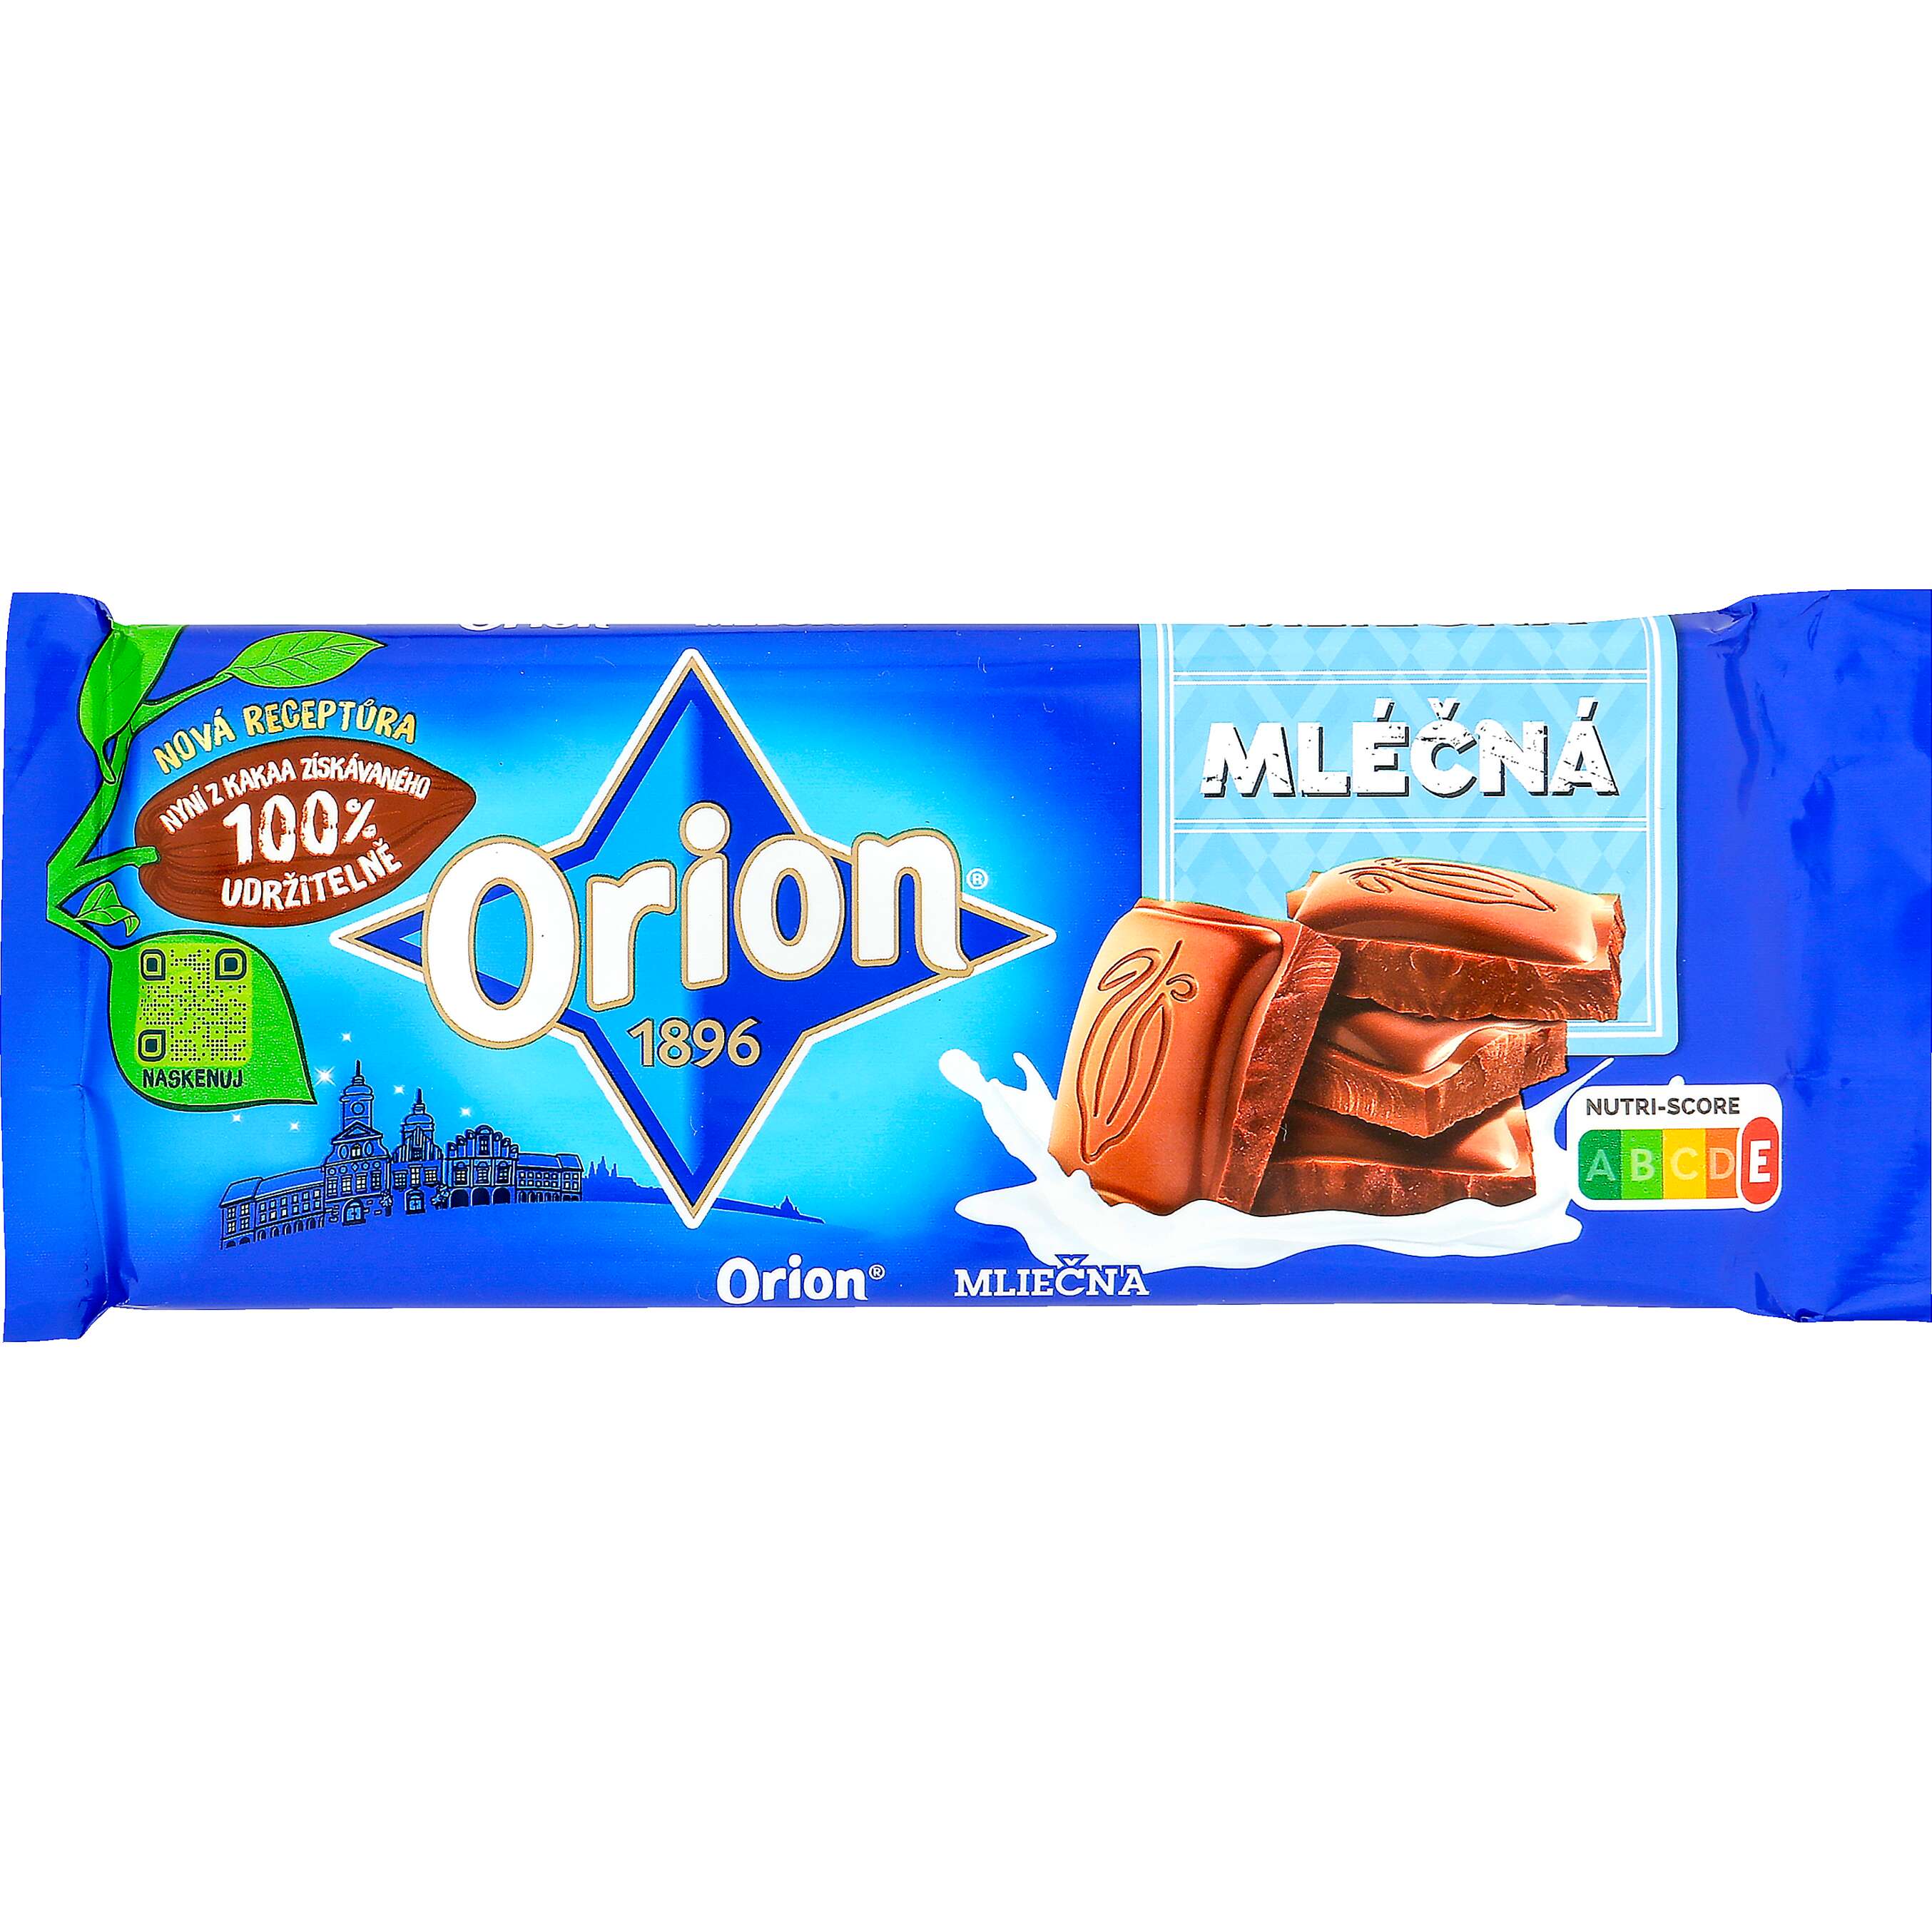 Zobrazit nabídku Orion Čokoláda